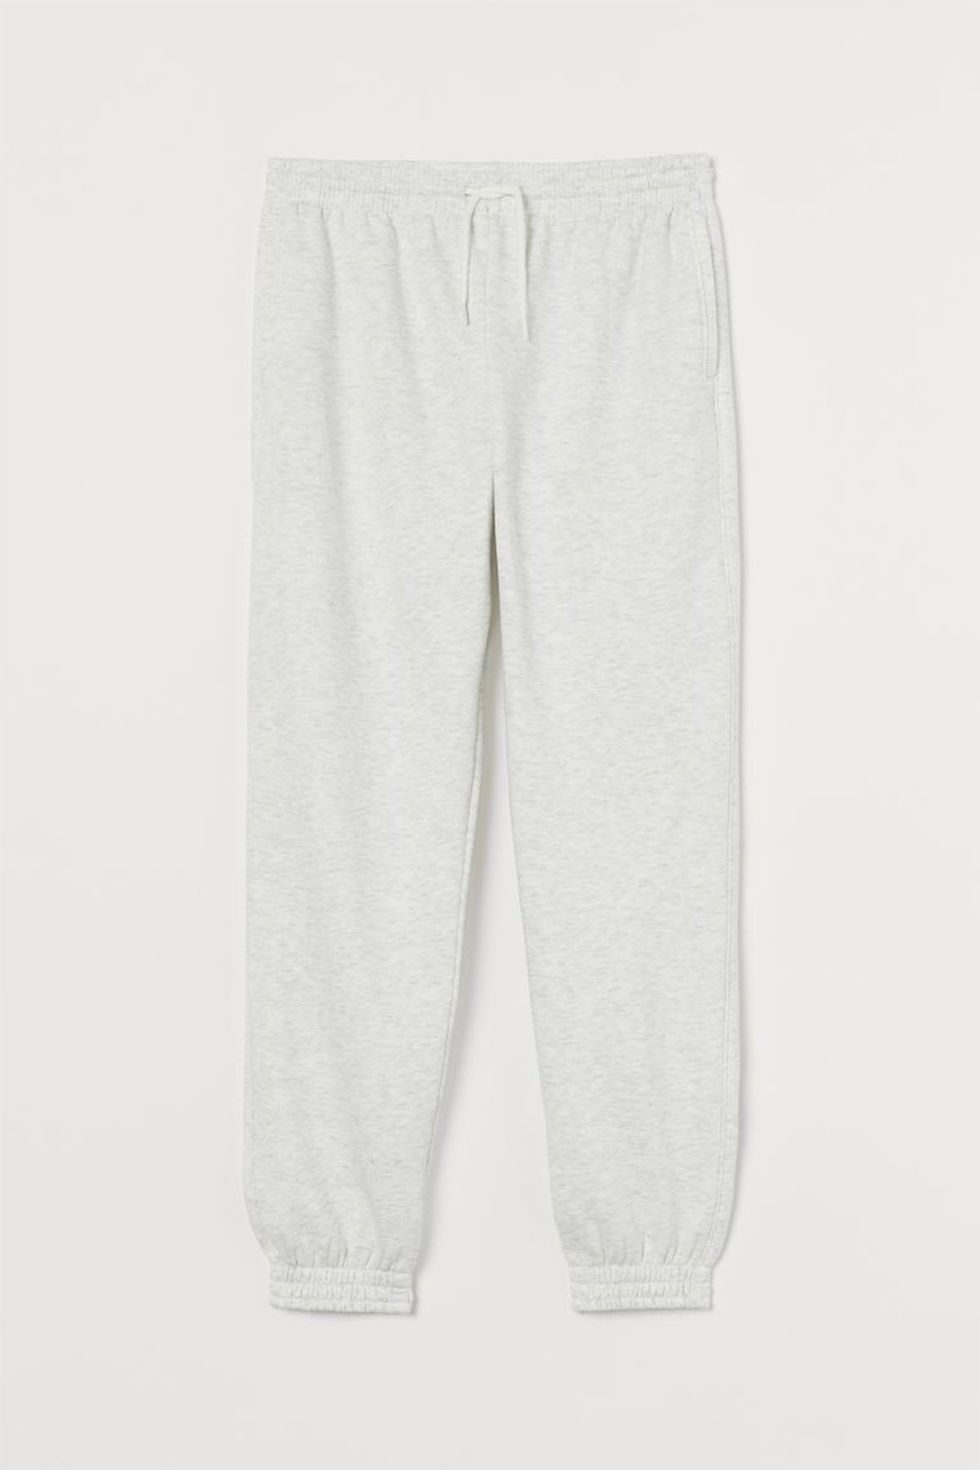 pantalones joggers en color gris, de hm